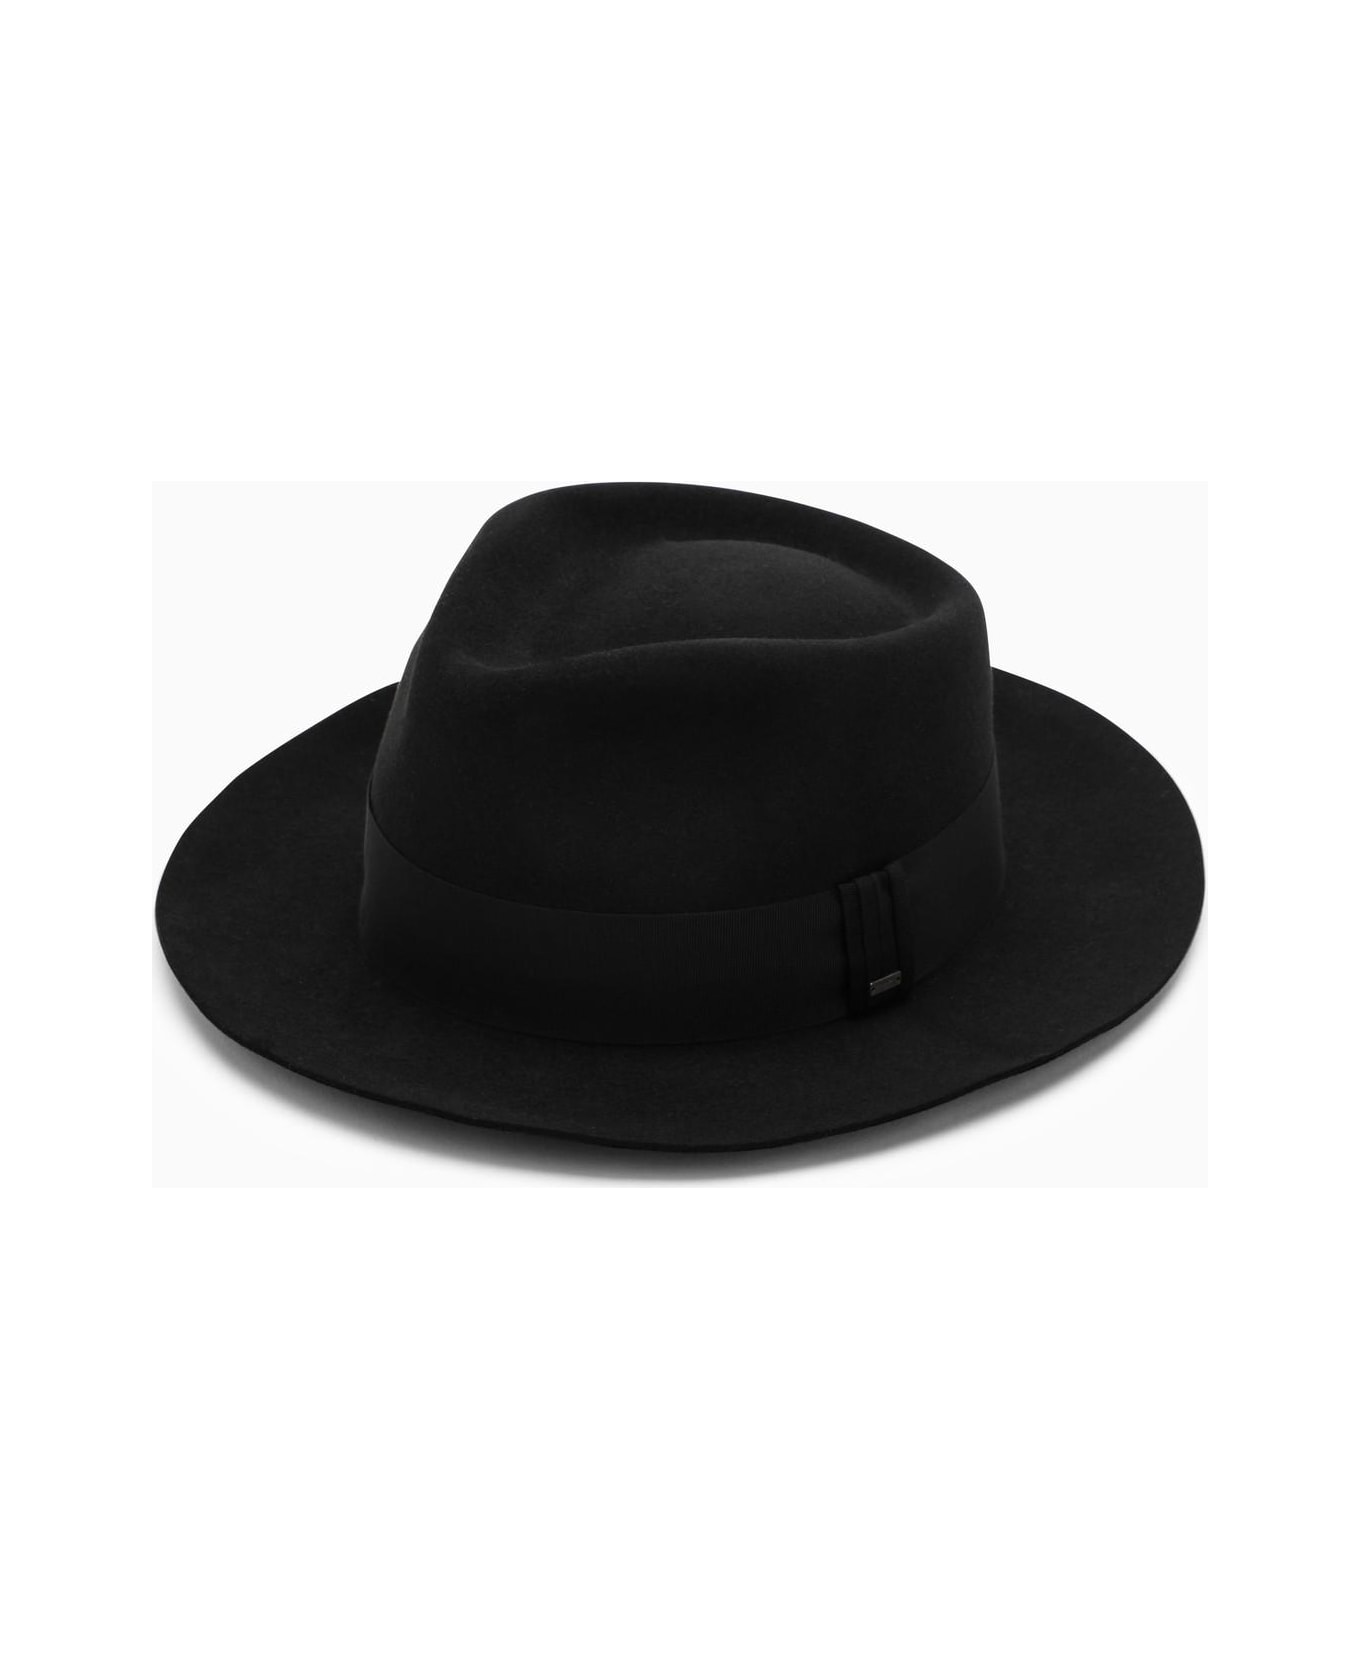 Saint Laurent Black Felt Hat - BLACK